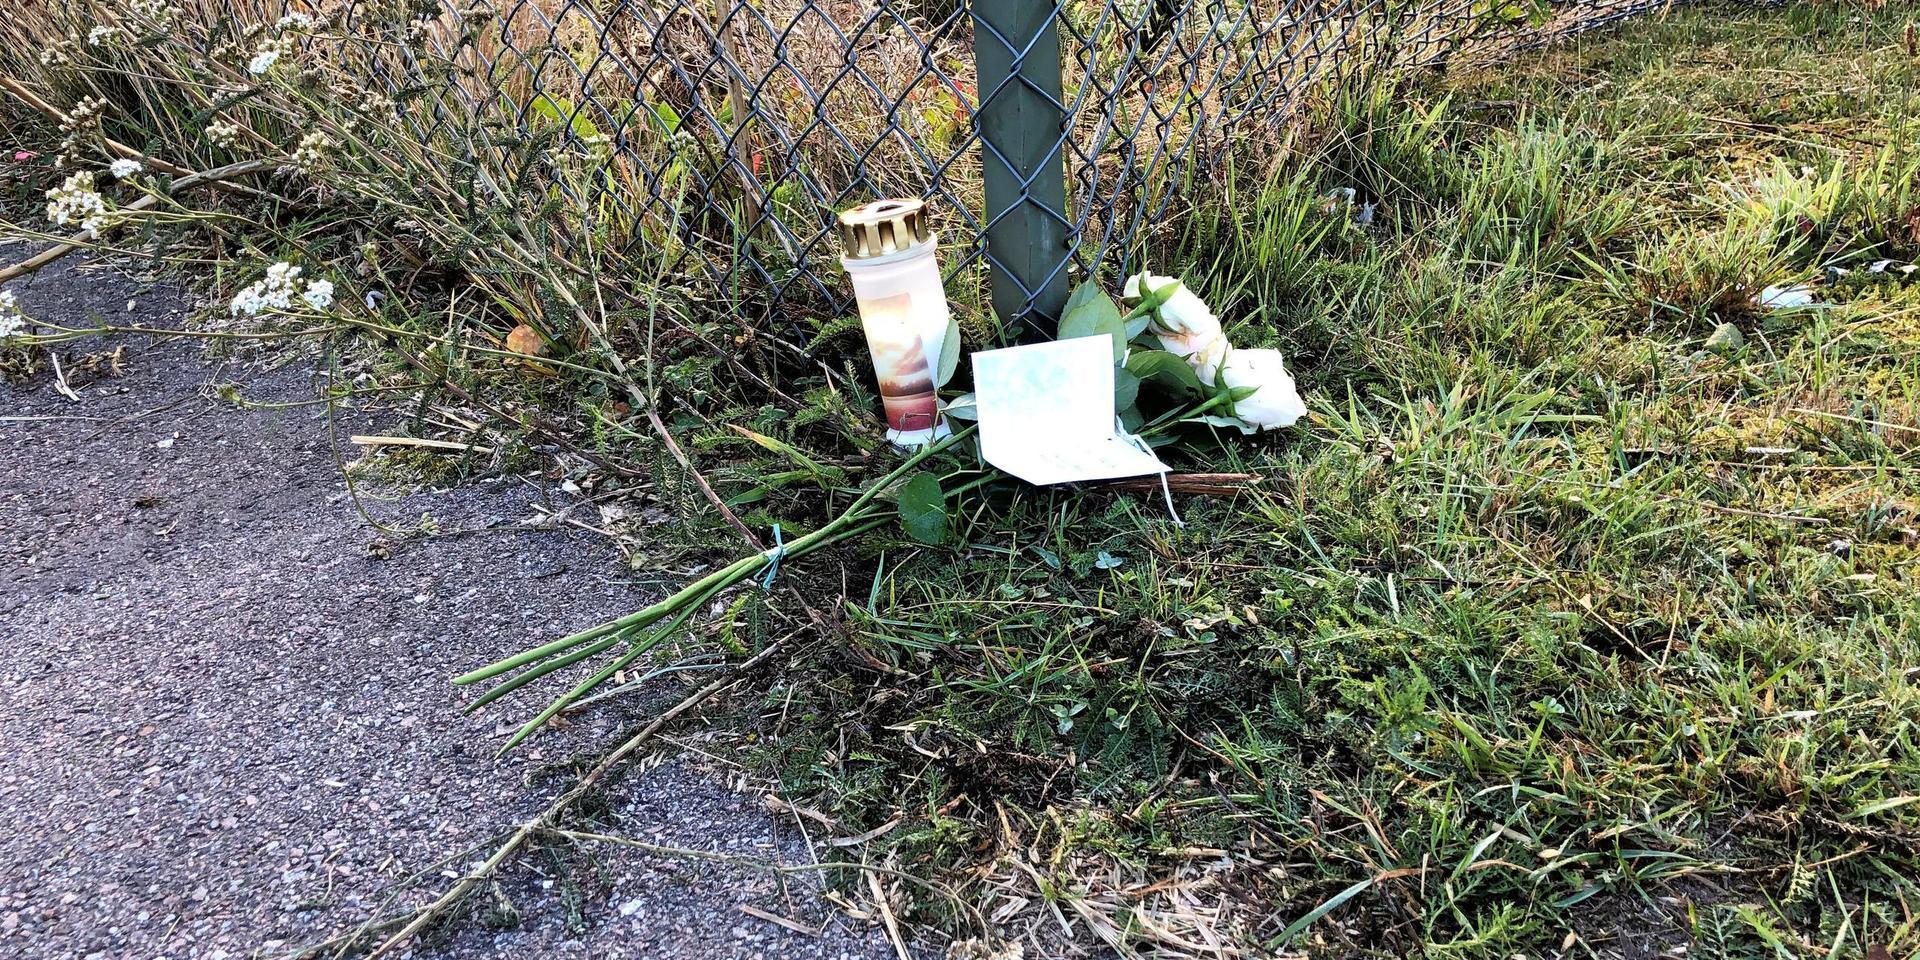 Dagen efter dödsolyckan i Vallberga hade sörjande tänt gravljus och lagt blommor med minnesord intill olycksplatsen.